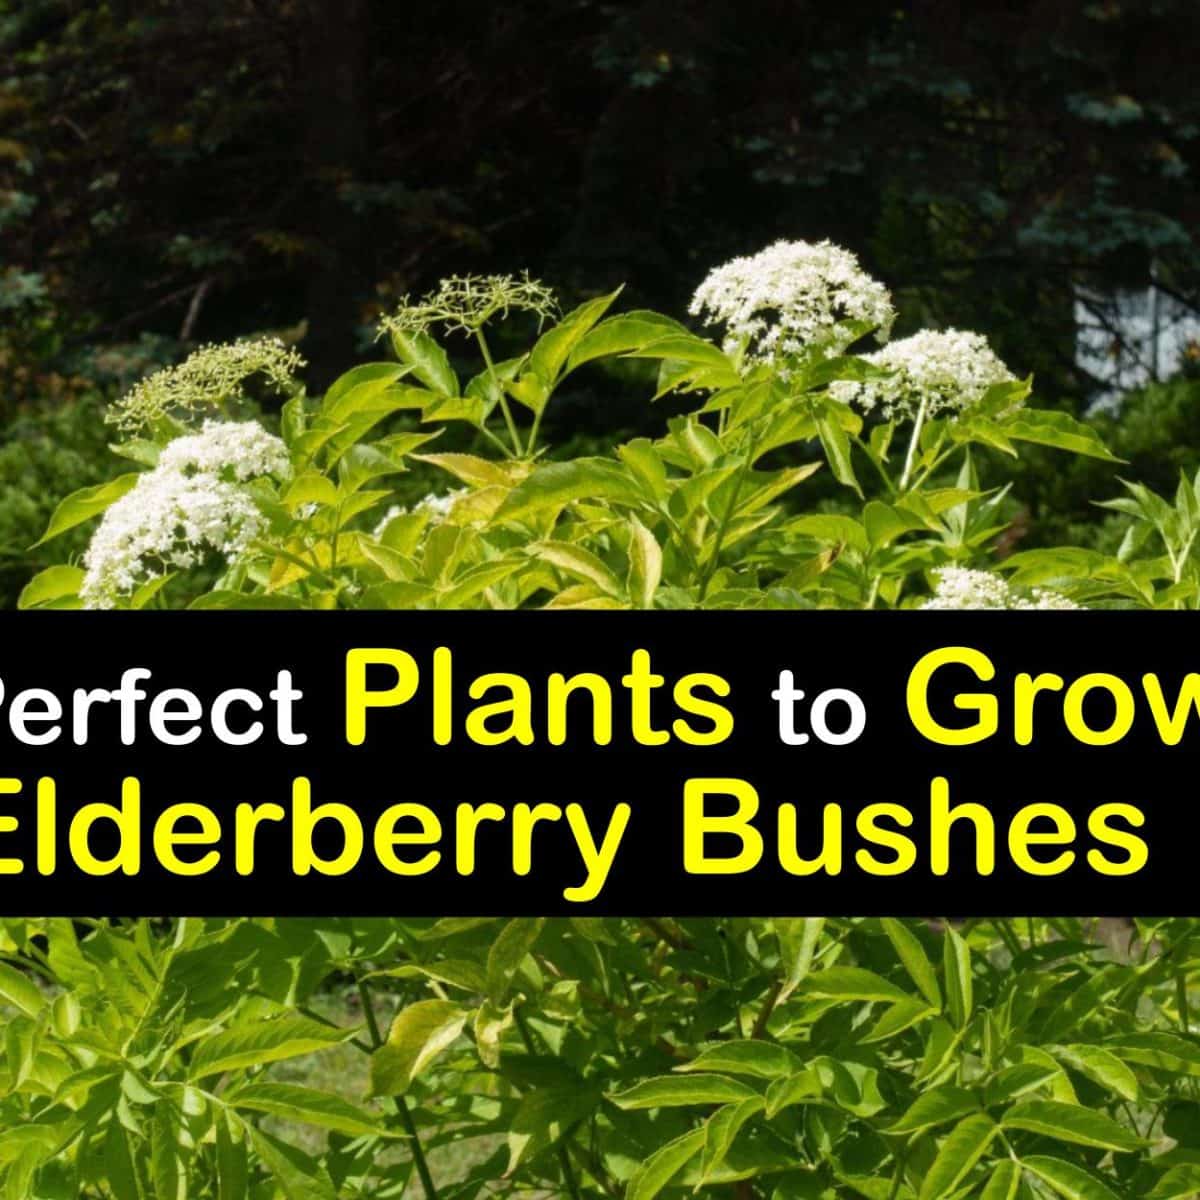 Image of Gooseberries and elderberry companion plants